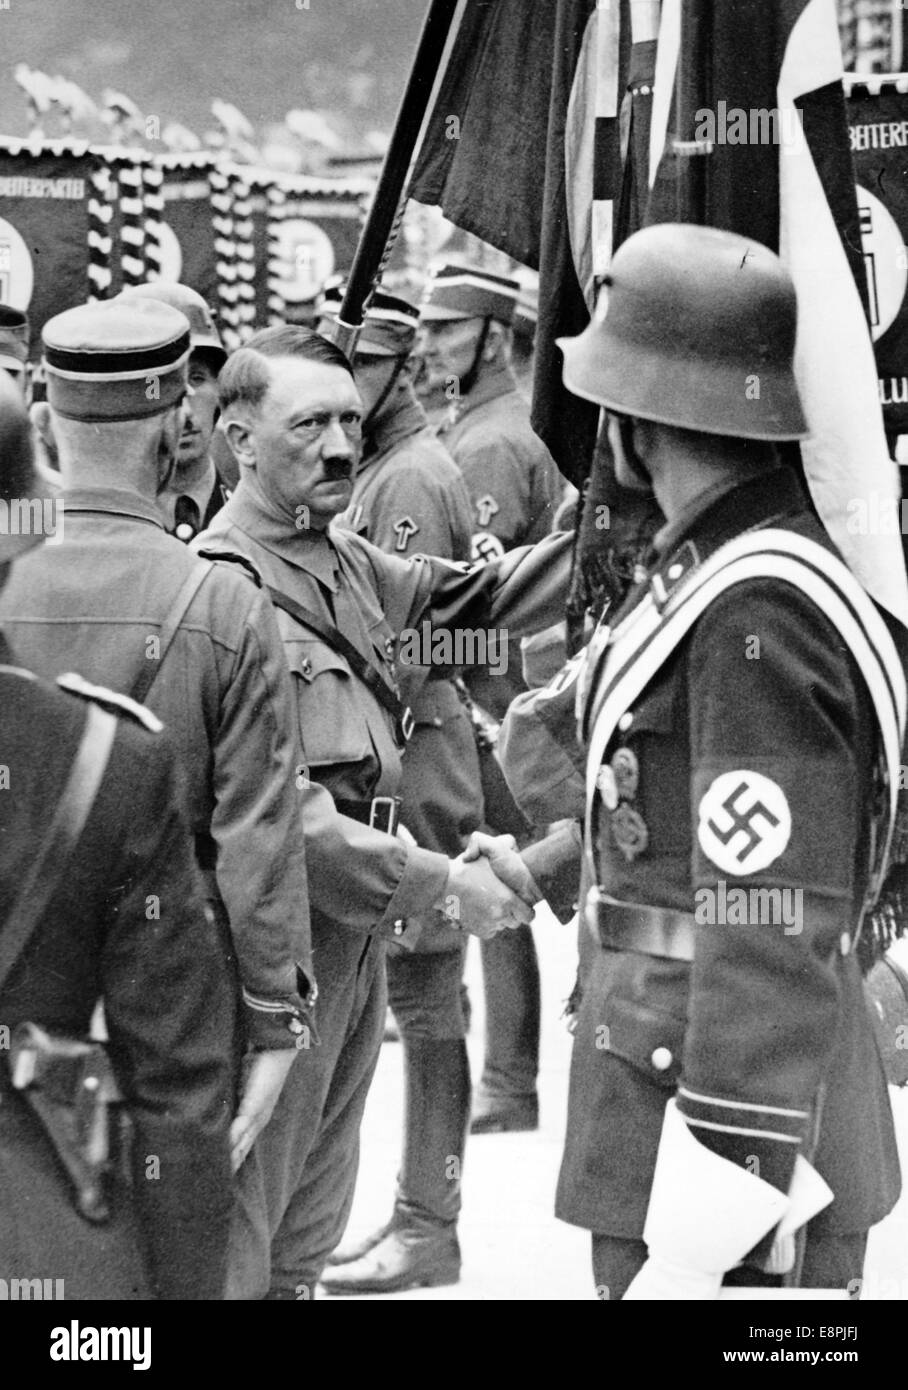 Rallye de Nuremberg 1937 à Nuremberg, Allemagne - Adolf Hitler consacre les nouvelles normes de sa (Sturmabteilung), SS (Schutzstaffel) et NSKK (National socialiste Motor corps) avec le 'Blood-flag'. Les nouvelles normes sont touchées par le "drapeau du sang" (derrière Hitler), qui a été soi-disant porté pendant le Beer Hall Putsch, et ainsi consacré. Fotoarchiv für Zeitgeschichtee - PAS DE SERVICE DE VIREMENT - Banque D'Images